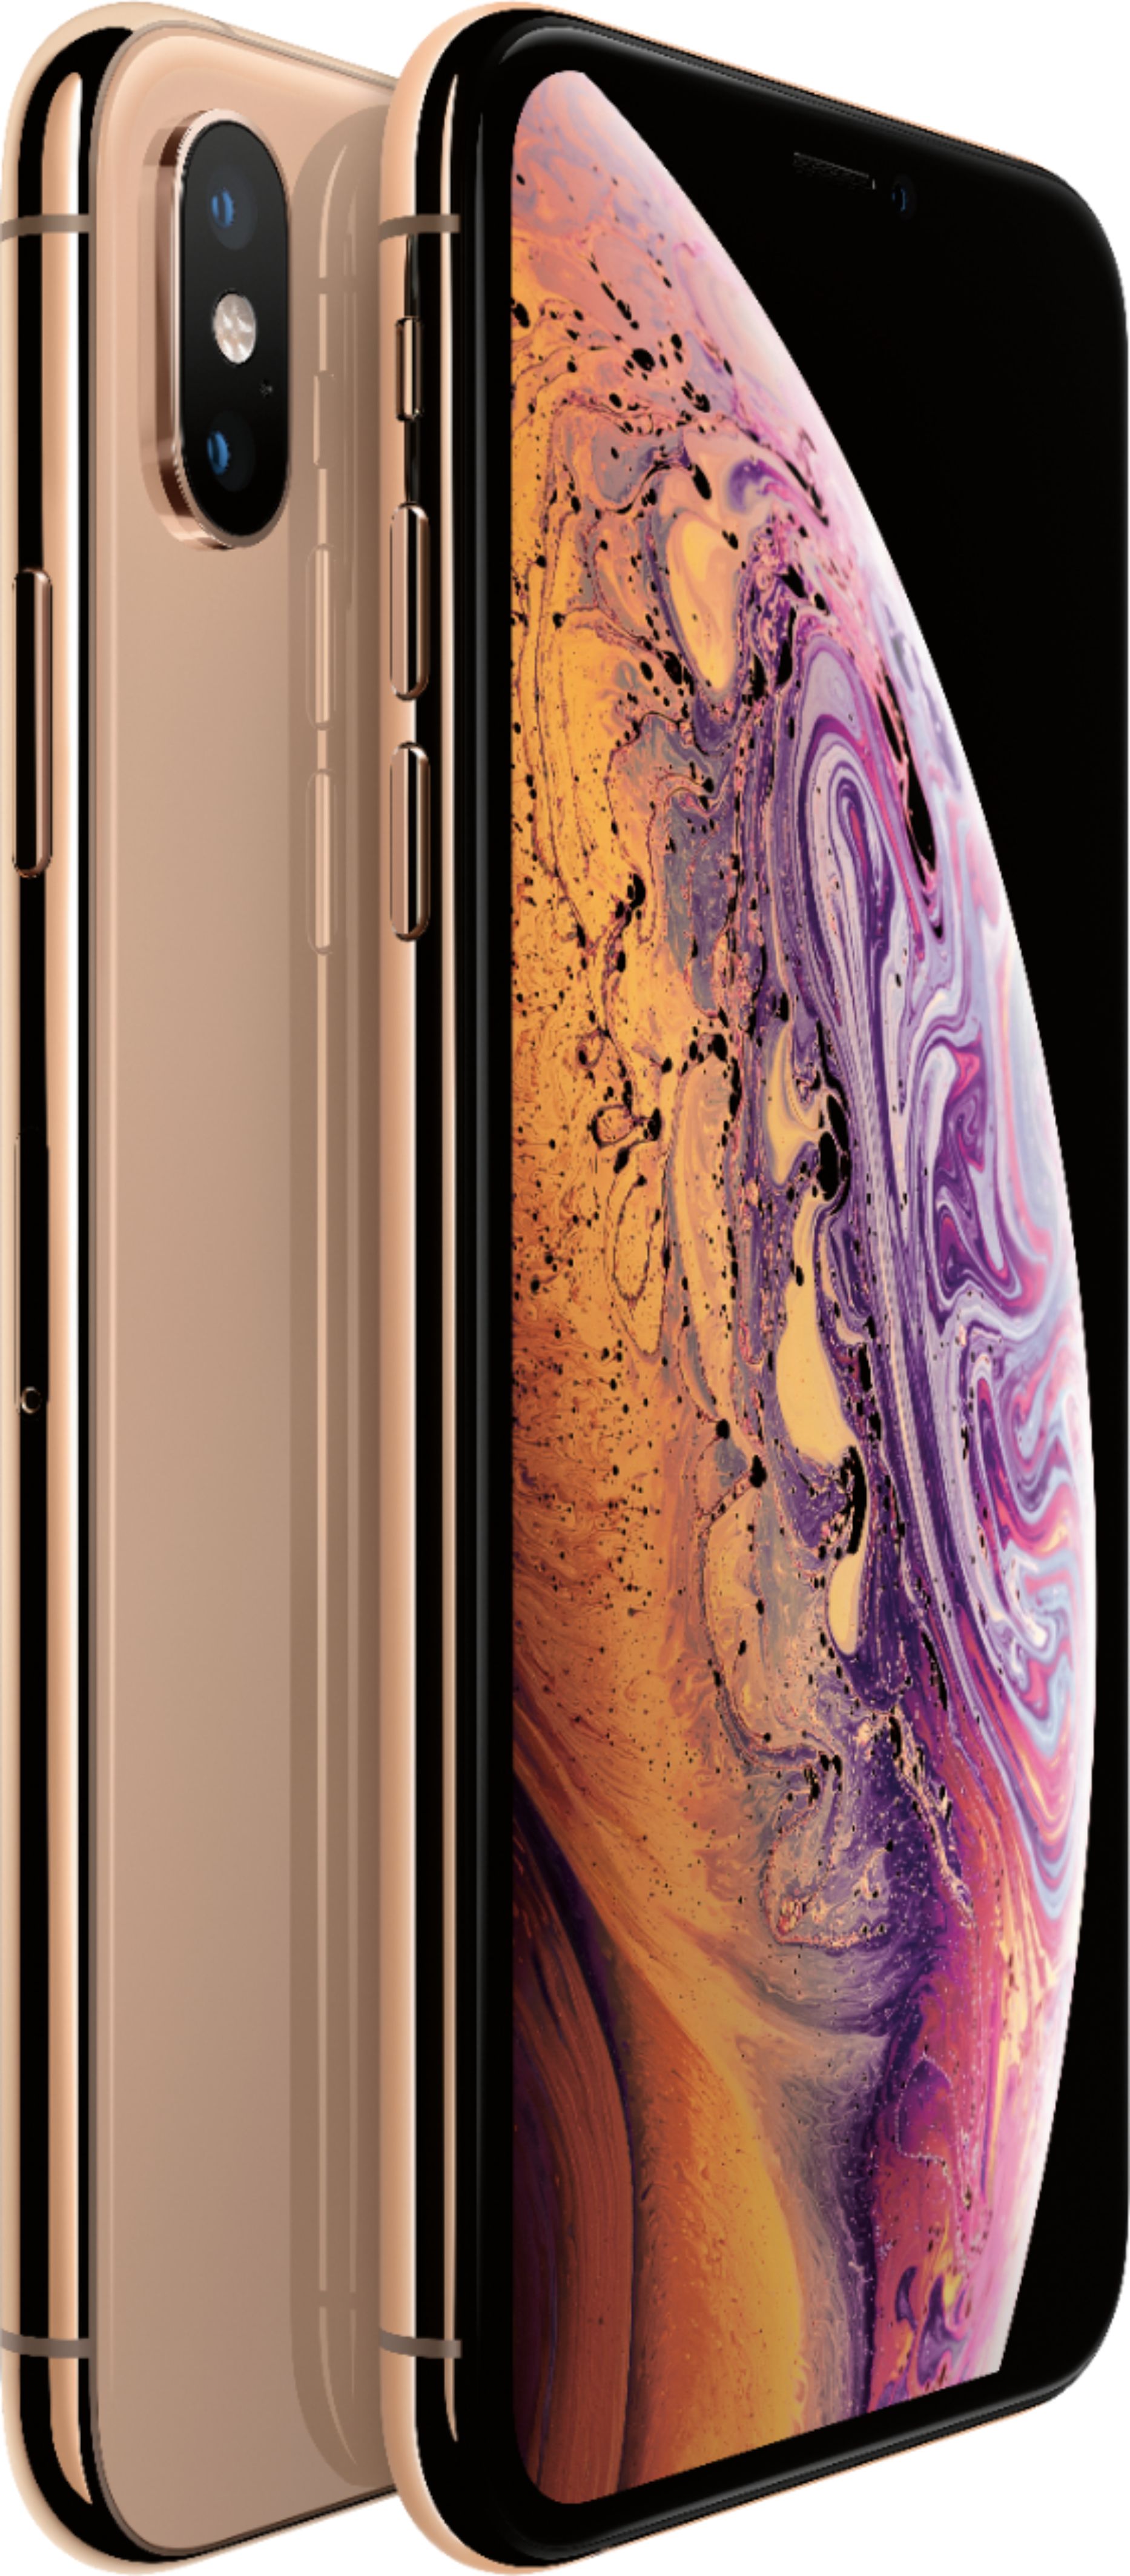 スマートフォン/携帯電話 スマートフォン本体 Best Buy: Apple iPhone XS 64GB Gold (AT&T) MT962LL/A